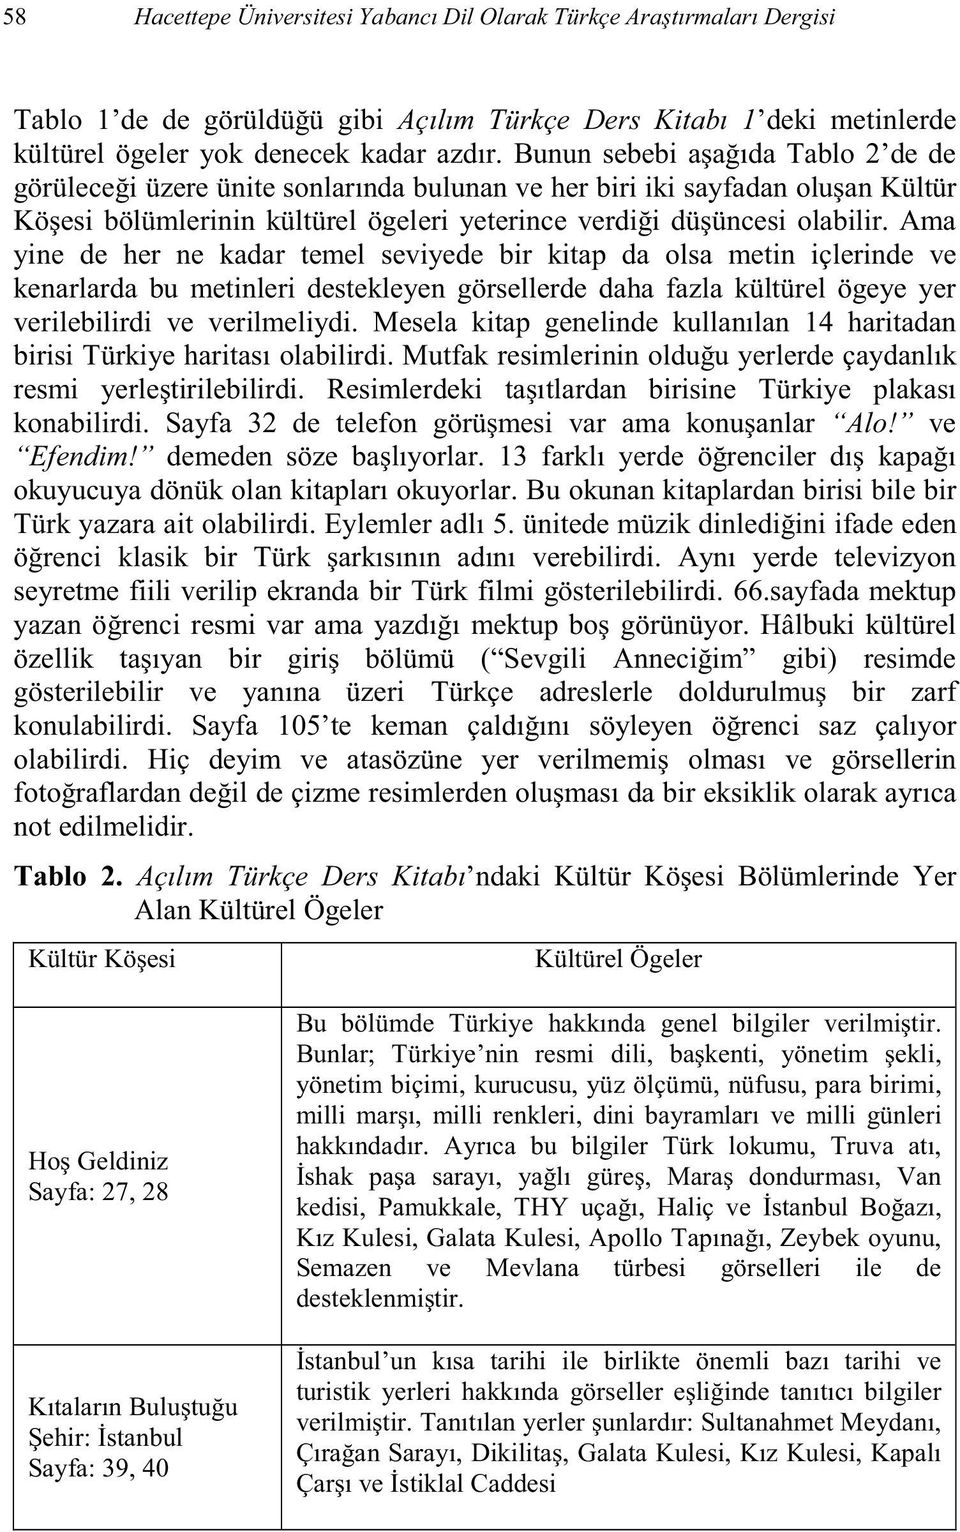 plardan birisi bile bir Türk yazara seyretme fiili verilip ekranda bir Türk filmi gösterilebilirdi. 66.sayfada mektup yazan olabilirdi. H not edilmelidir.